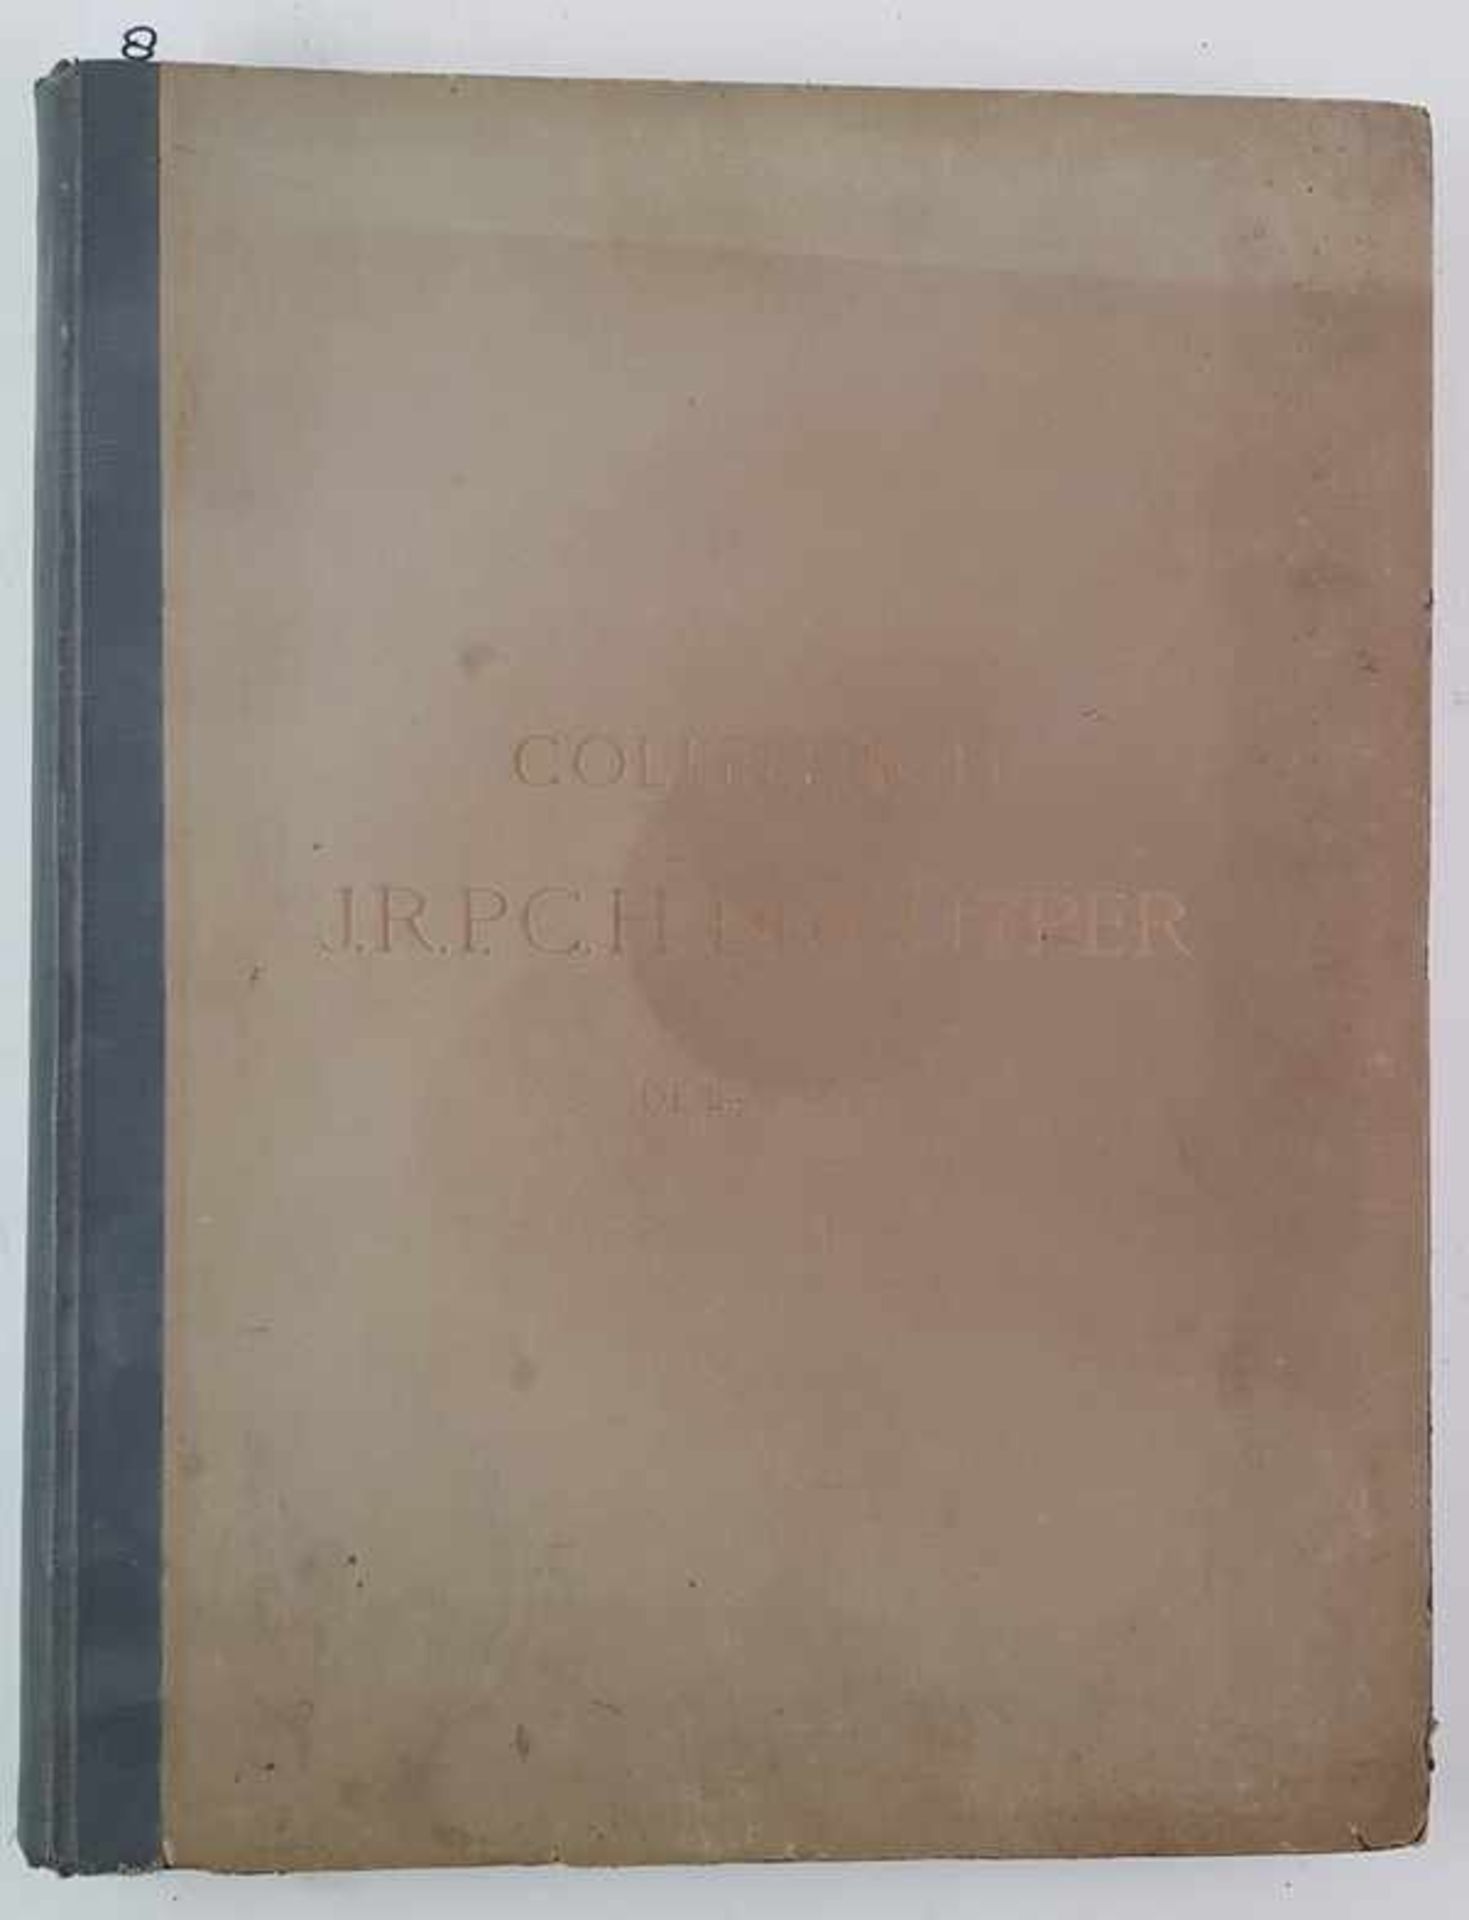 (Boeken) (Kunst) Collection J. R. P. C. H. de Kuyper de La Haye (1911)Collection J. R. P. C. H. - Image 2 of 19